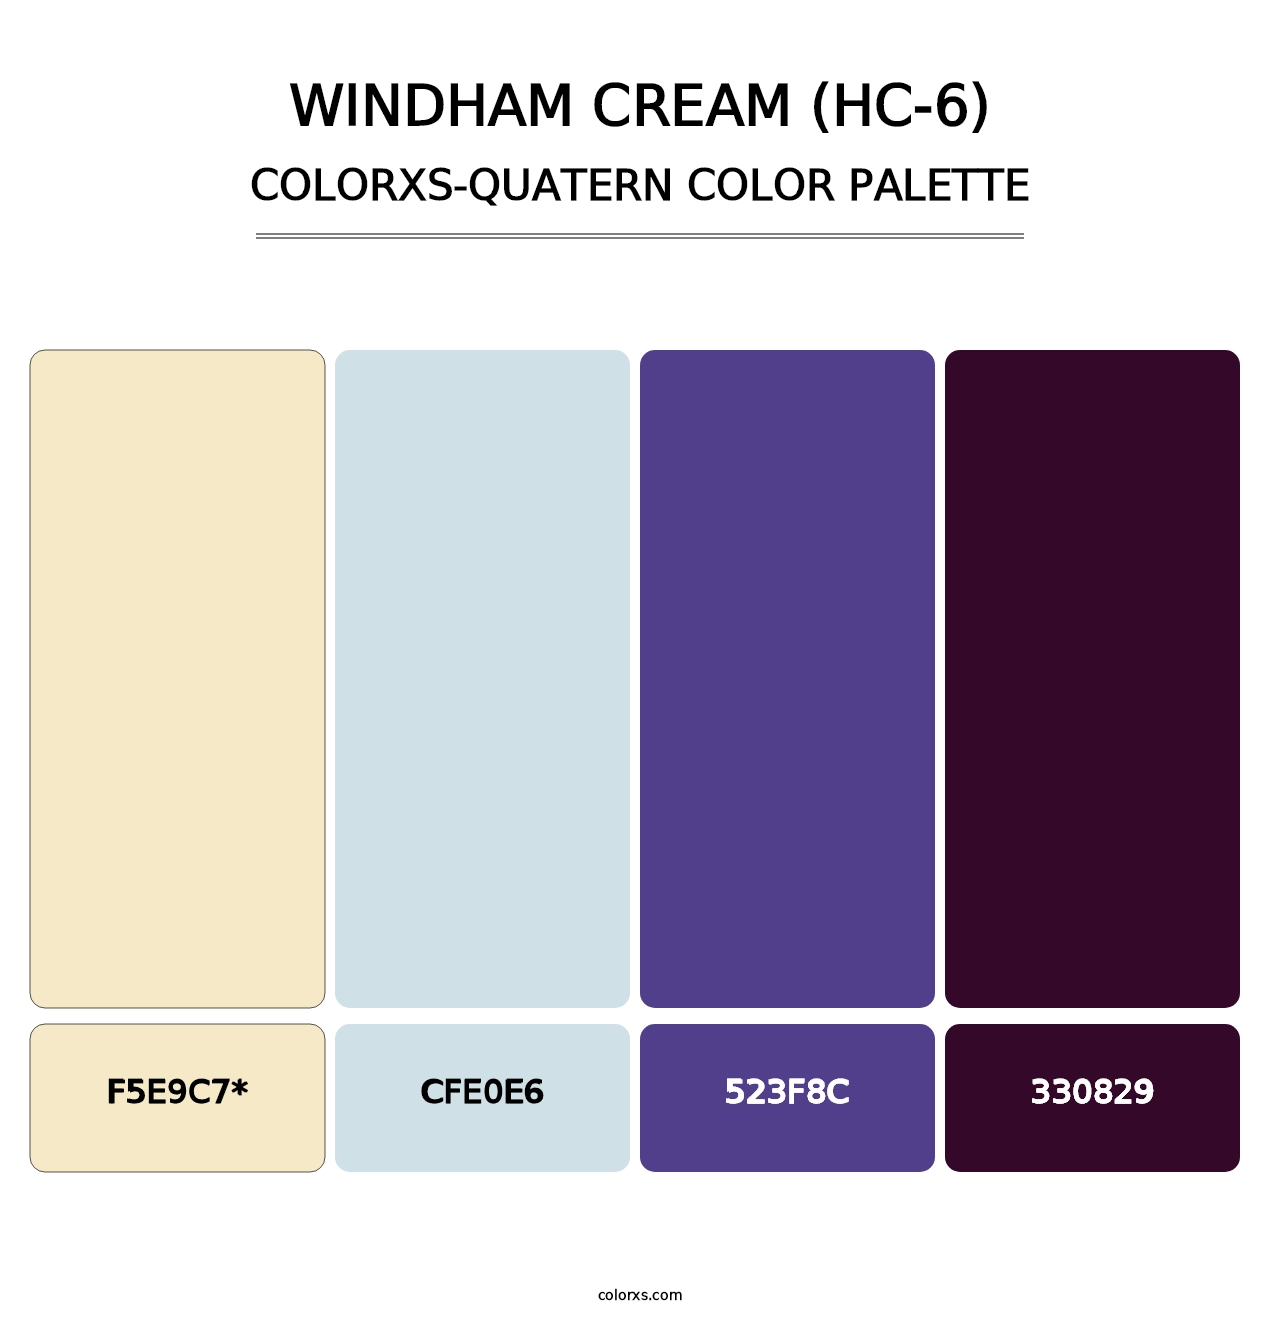 Windham Cream (HC-6) - Colorxs Quatern Palette